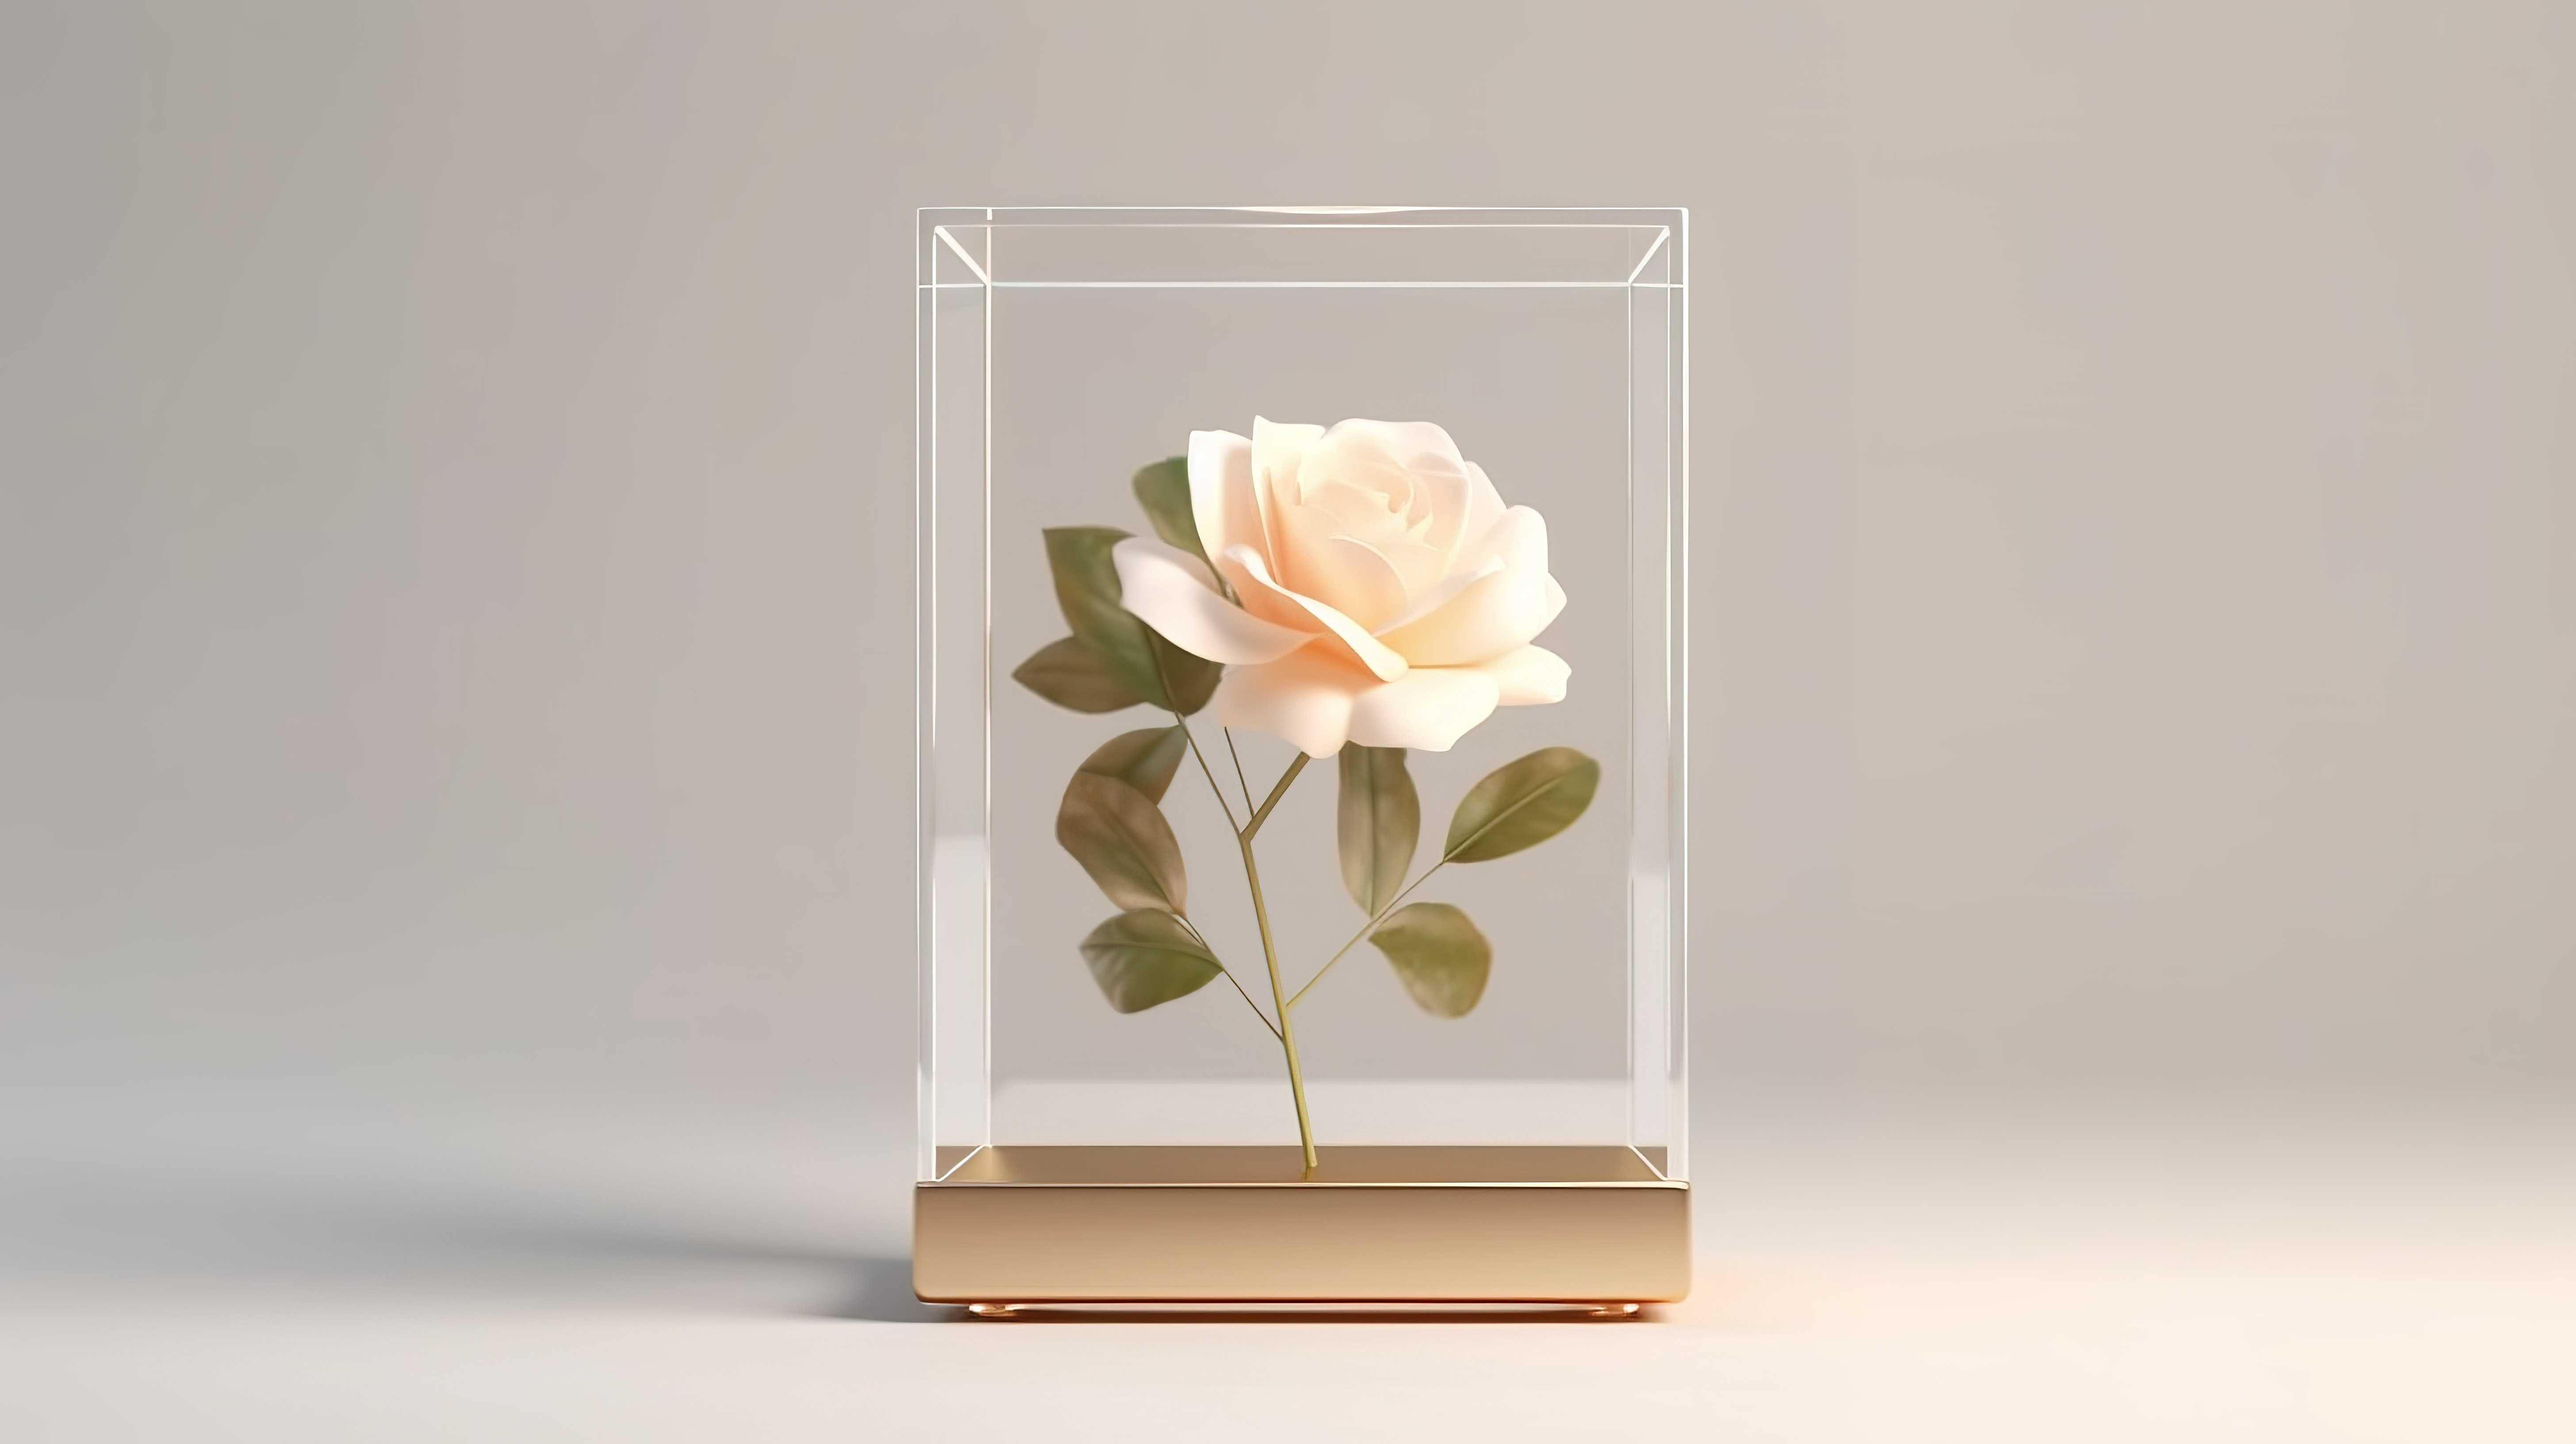 空白白色玻璃展示立方体模型中显示的米色玫瑰花的 3D 渲染图片